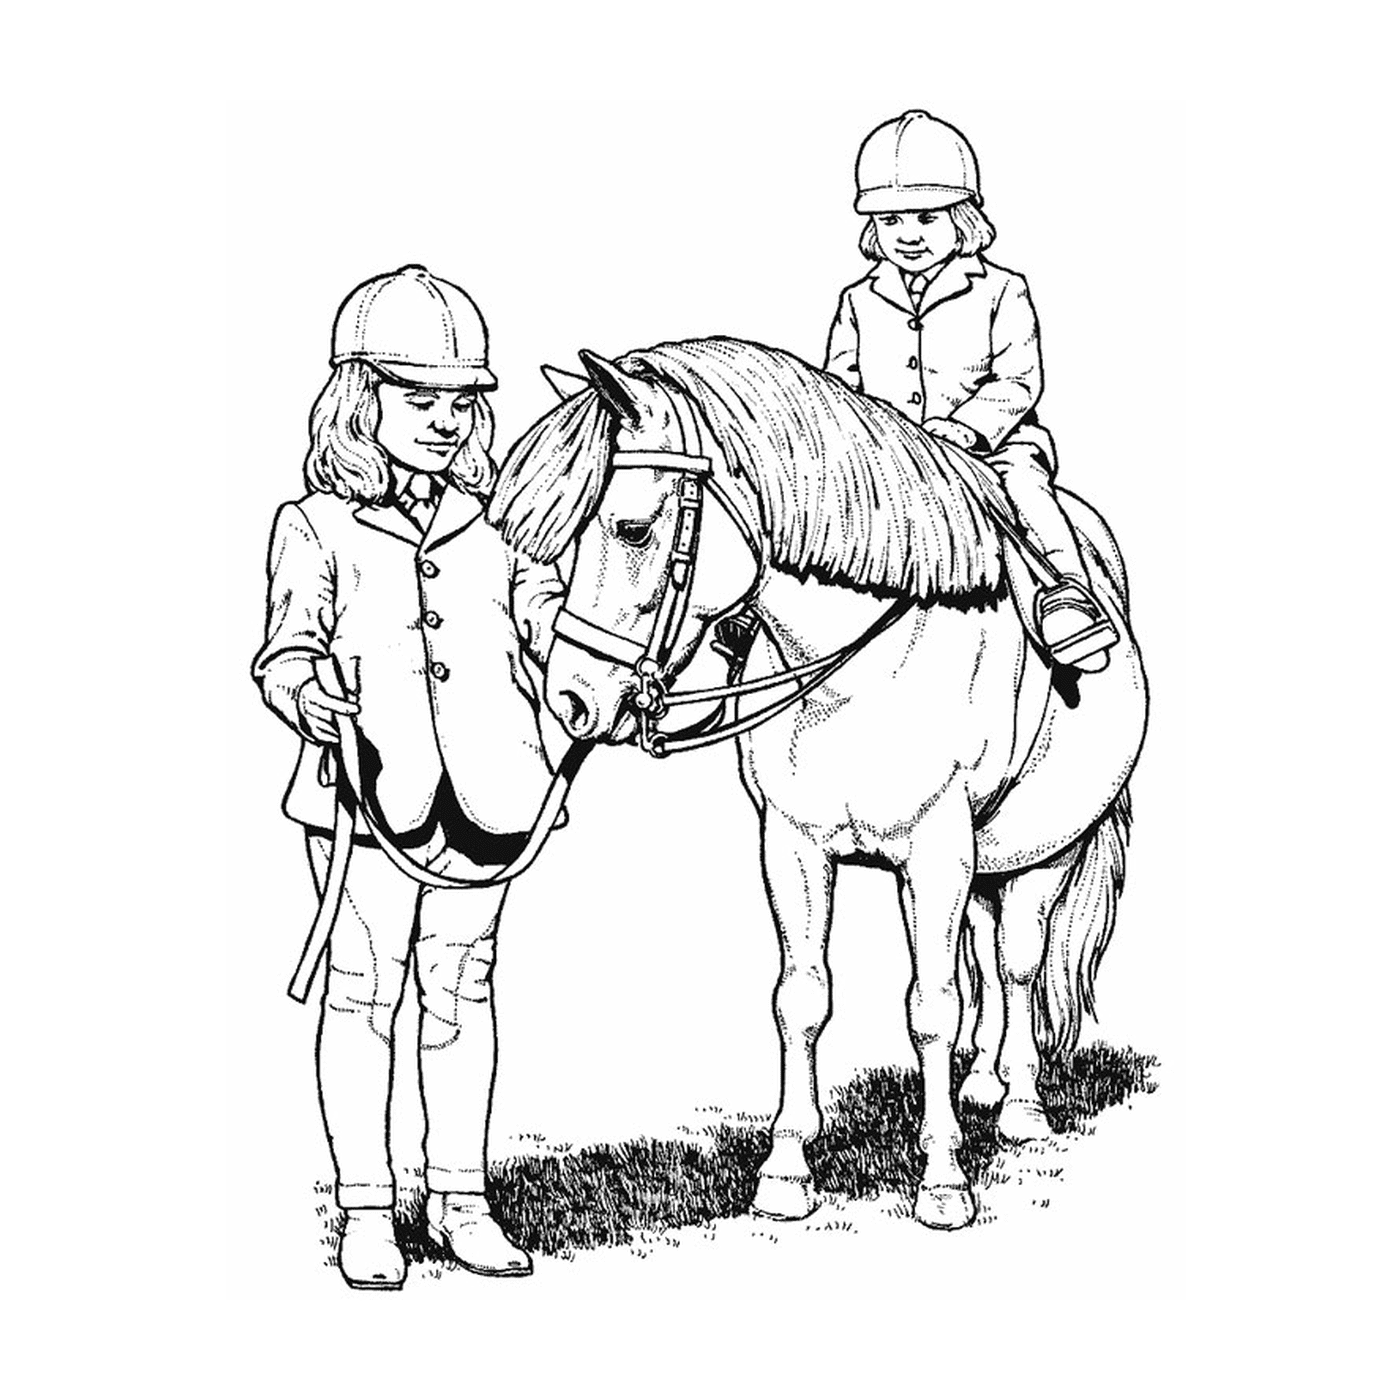  Race Horses - Two children ride on horseback holding the reins 